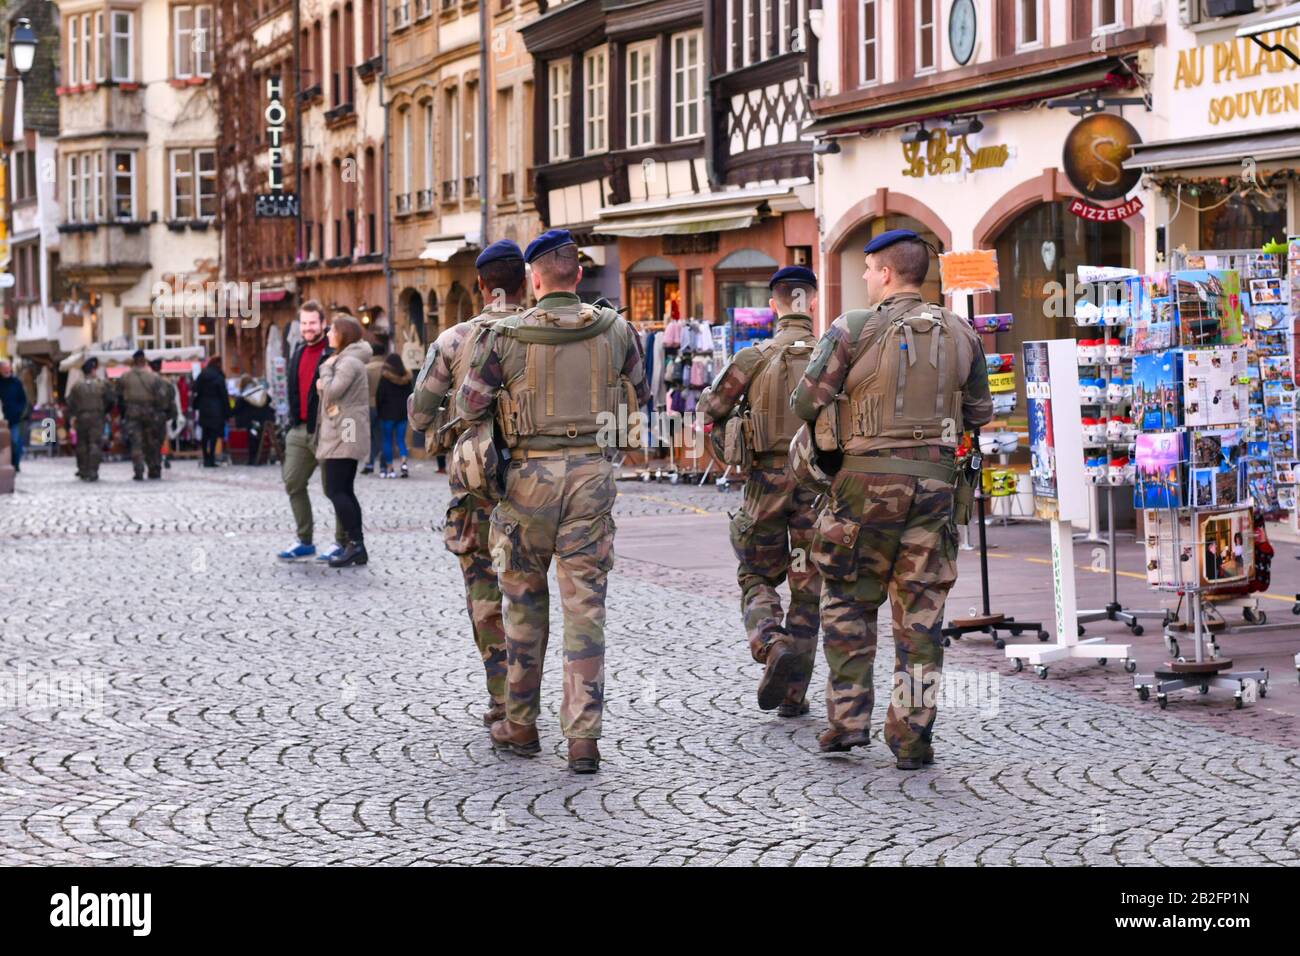 Straßburg, Frankreich - Februar 2020: Soldaten der französischen Sicherheitskräfte in Tarnkleidung patrosen in der historischen Innenstadt von Straßburg Stockfoto